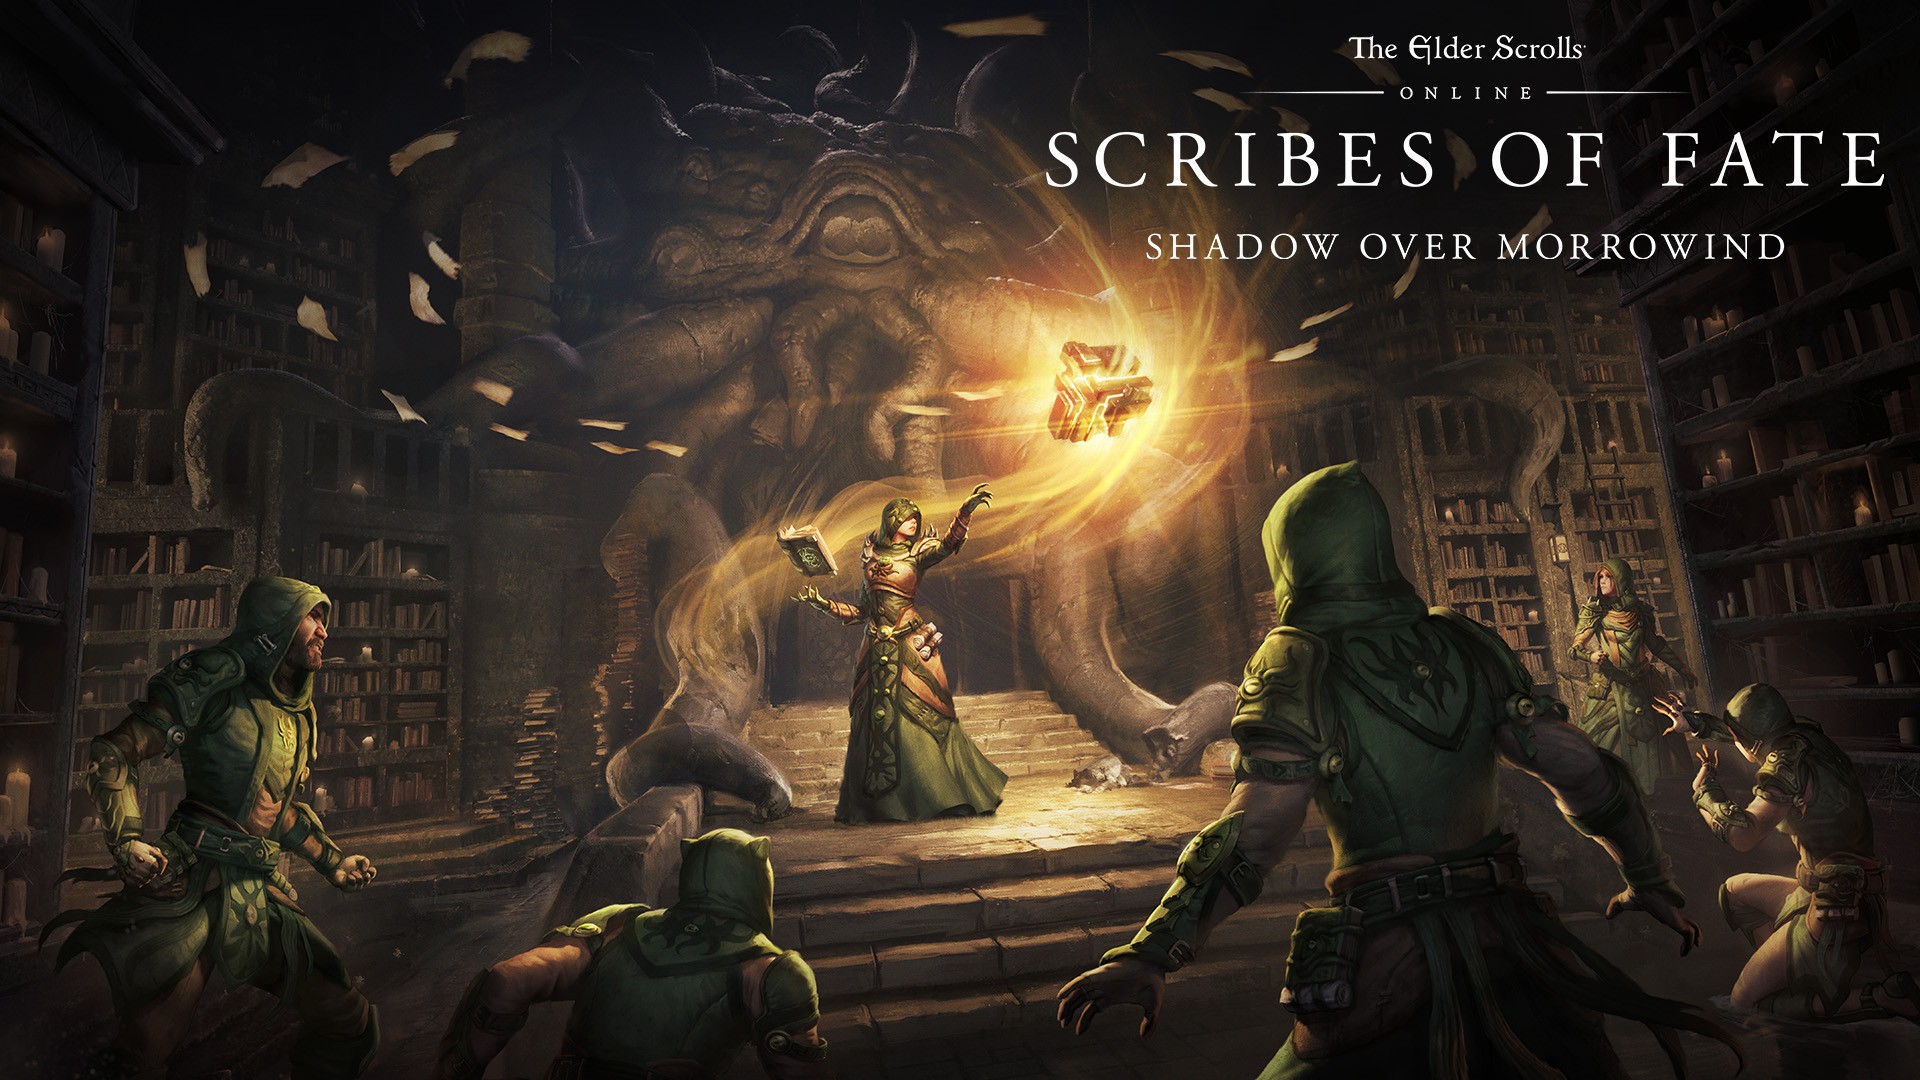 Video For The Elder Scrolls Online : commencez l’aventure de l’Ombre sur Morrowind avec les donjons de l’extension Scribes of Fate